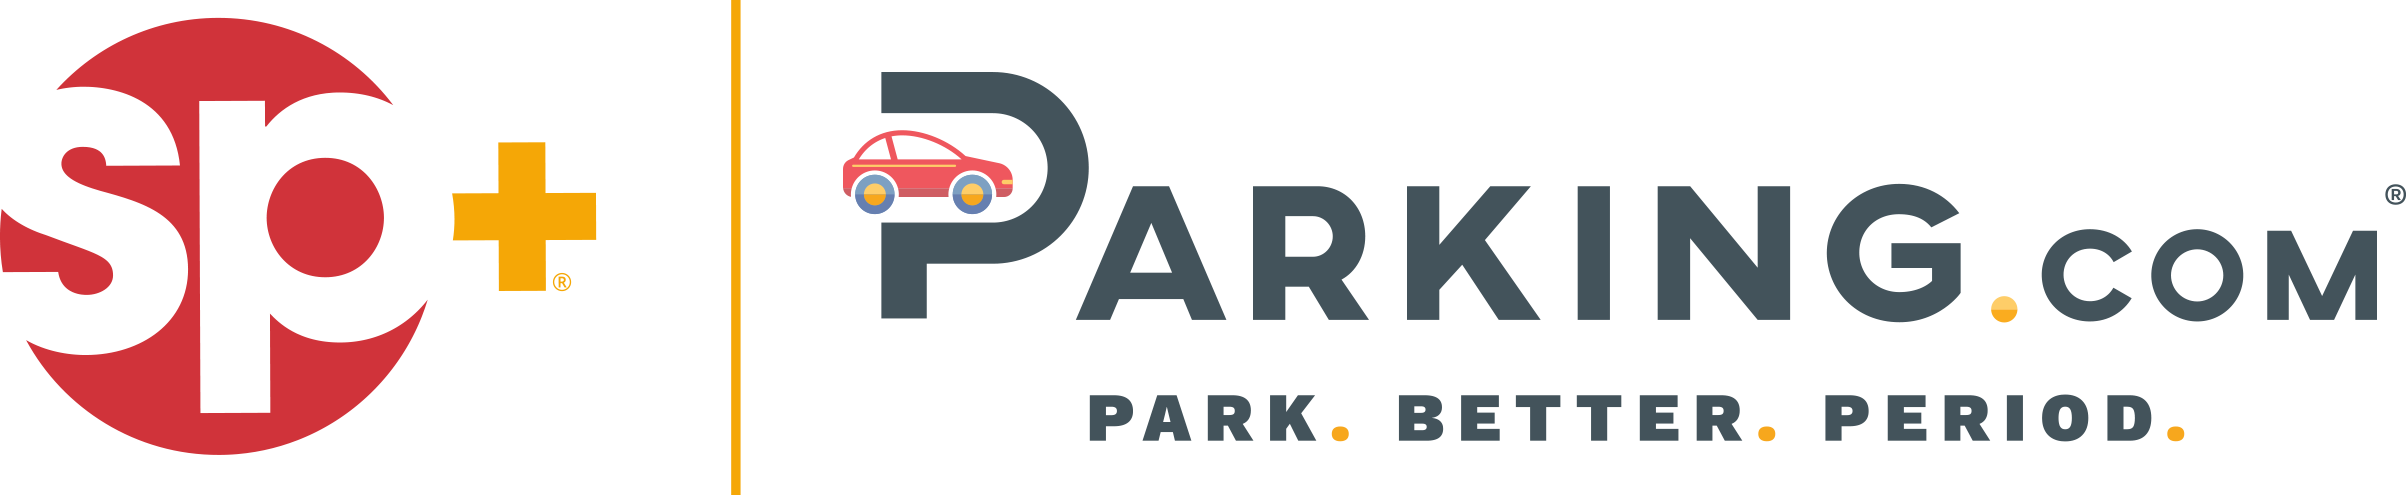 SP+Parking.com_LogoGry.png